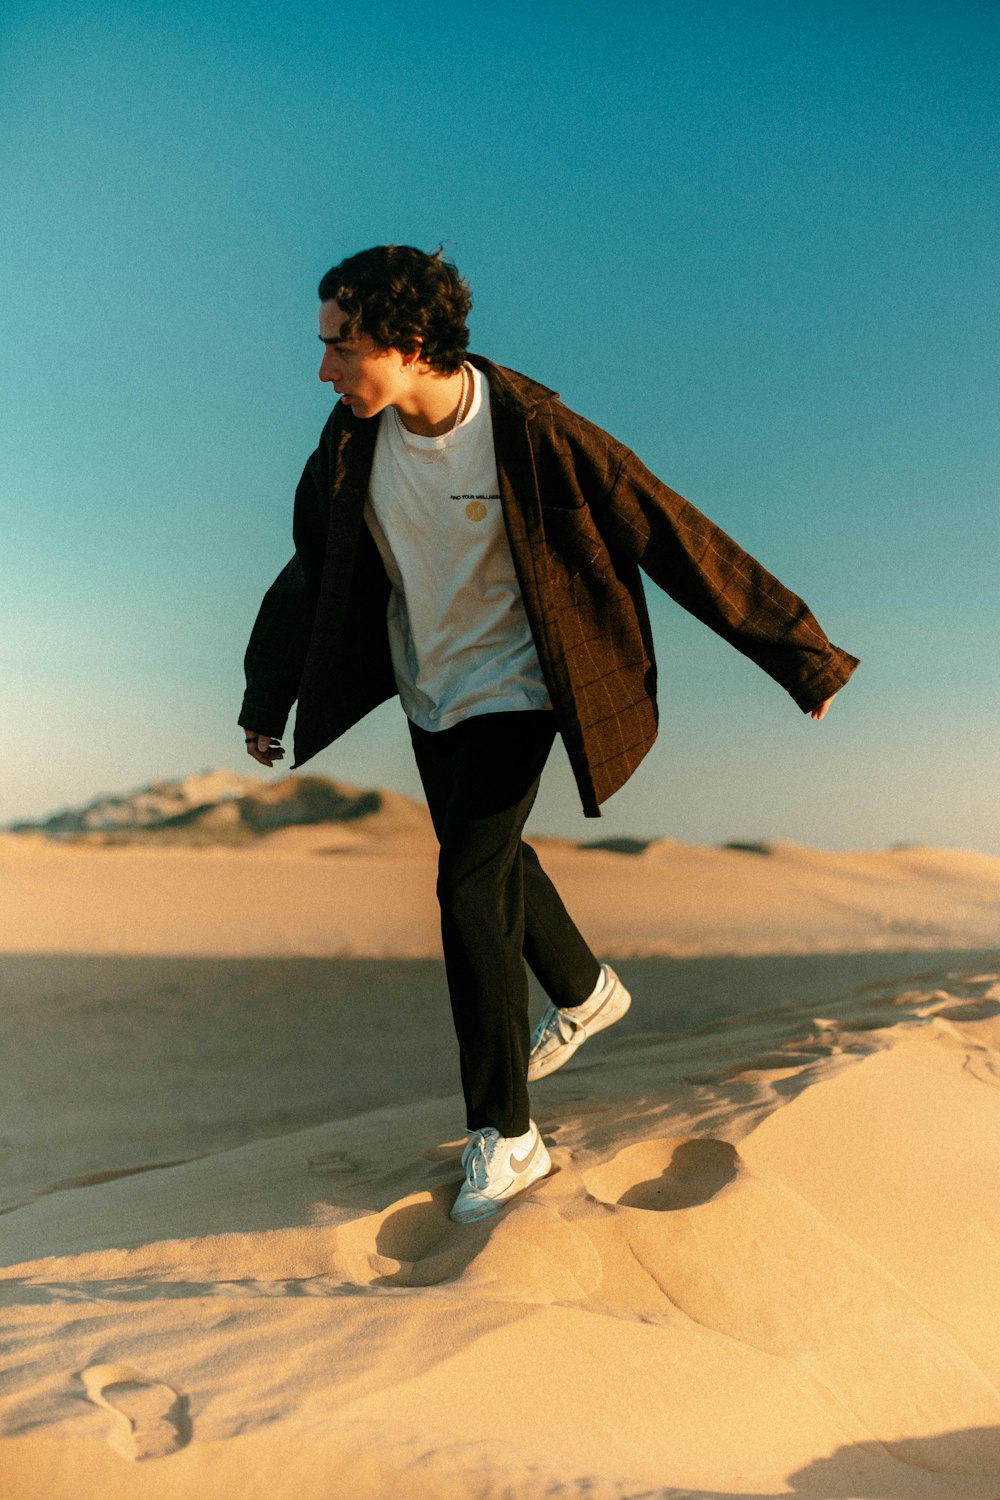 Ein Mann rennt in der Wüste